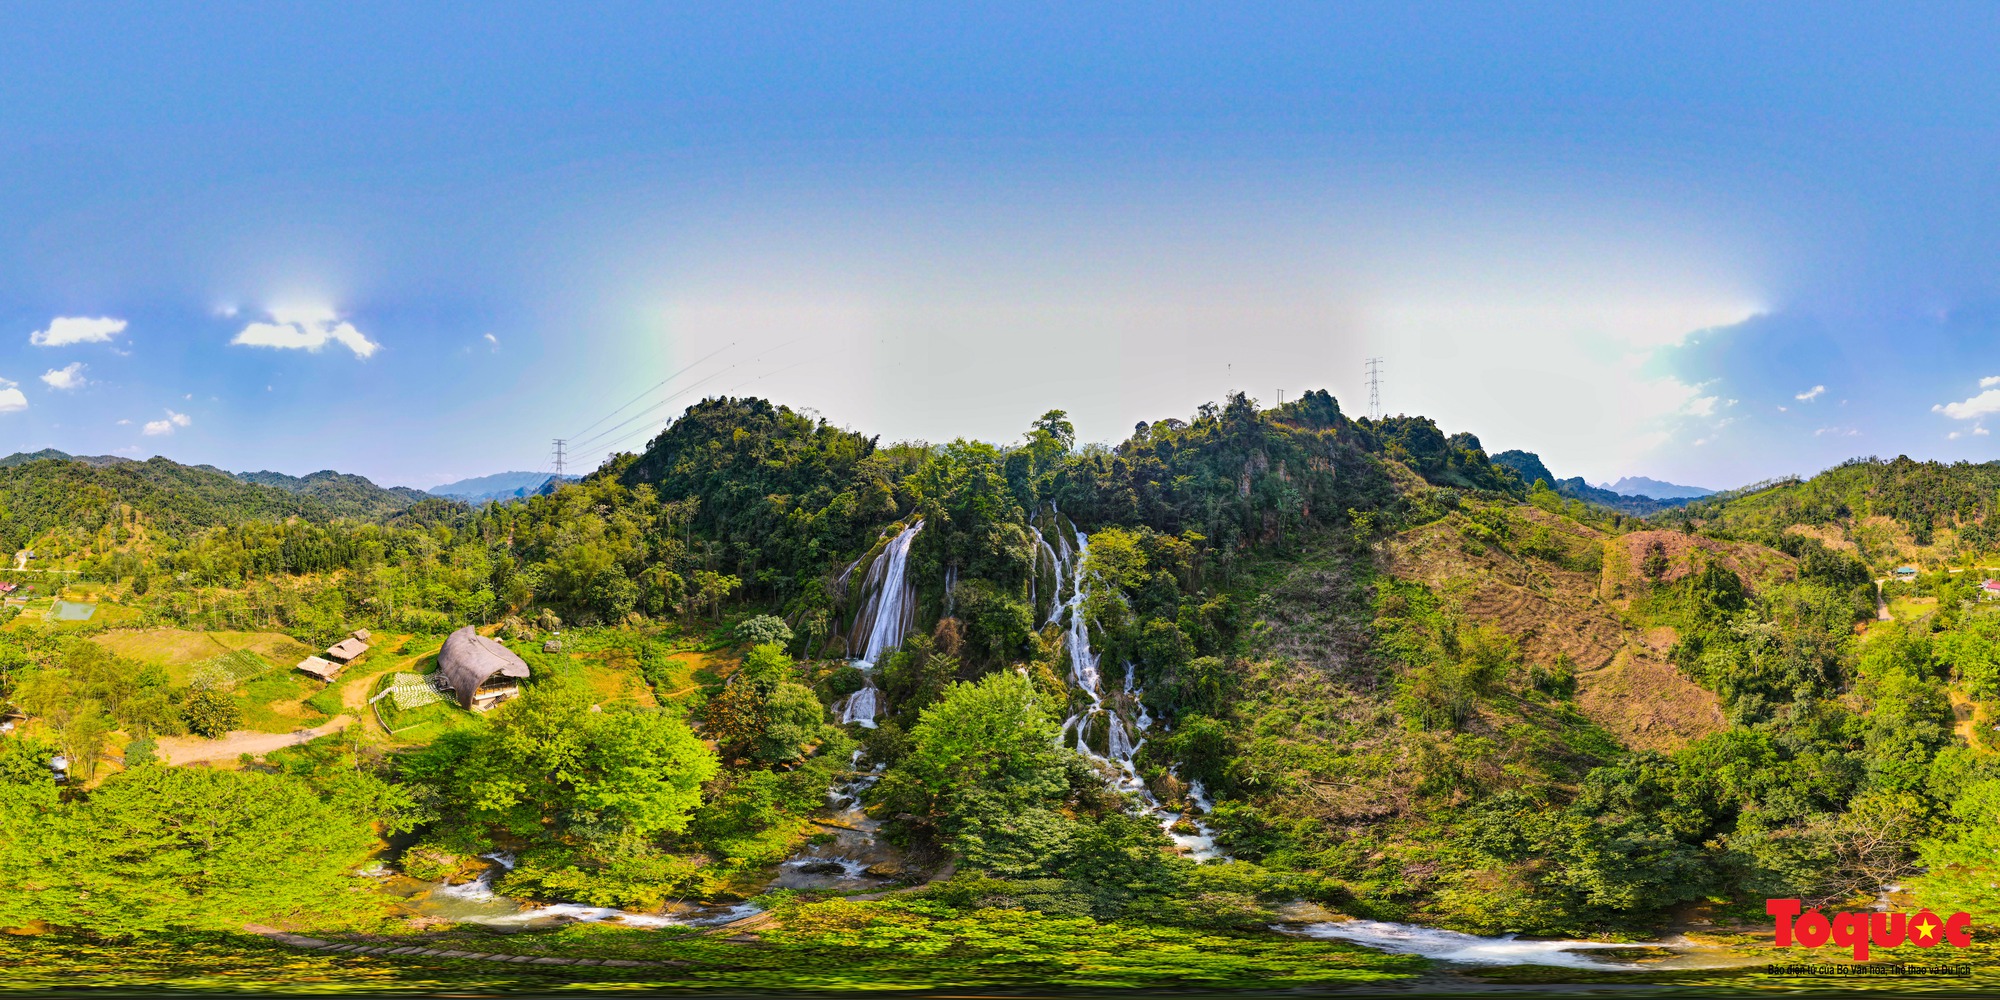 Khám phá thác Tạt Nàng đẹp quyến rũ giữa núi rừng Sơn La - Ảnh 1.